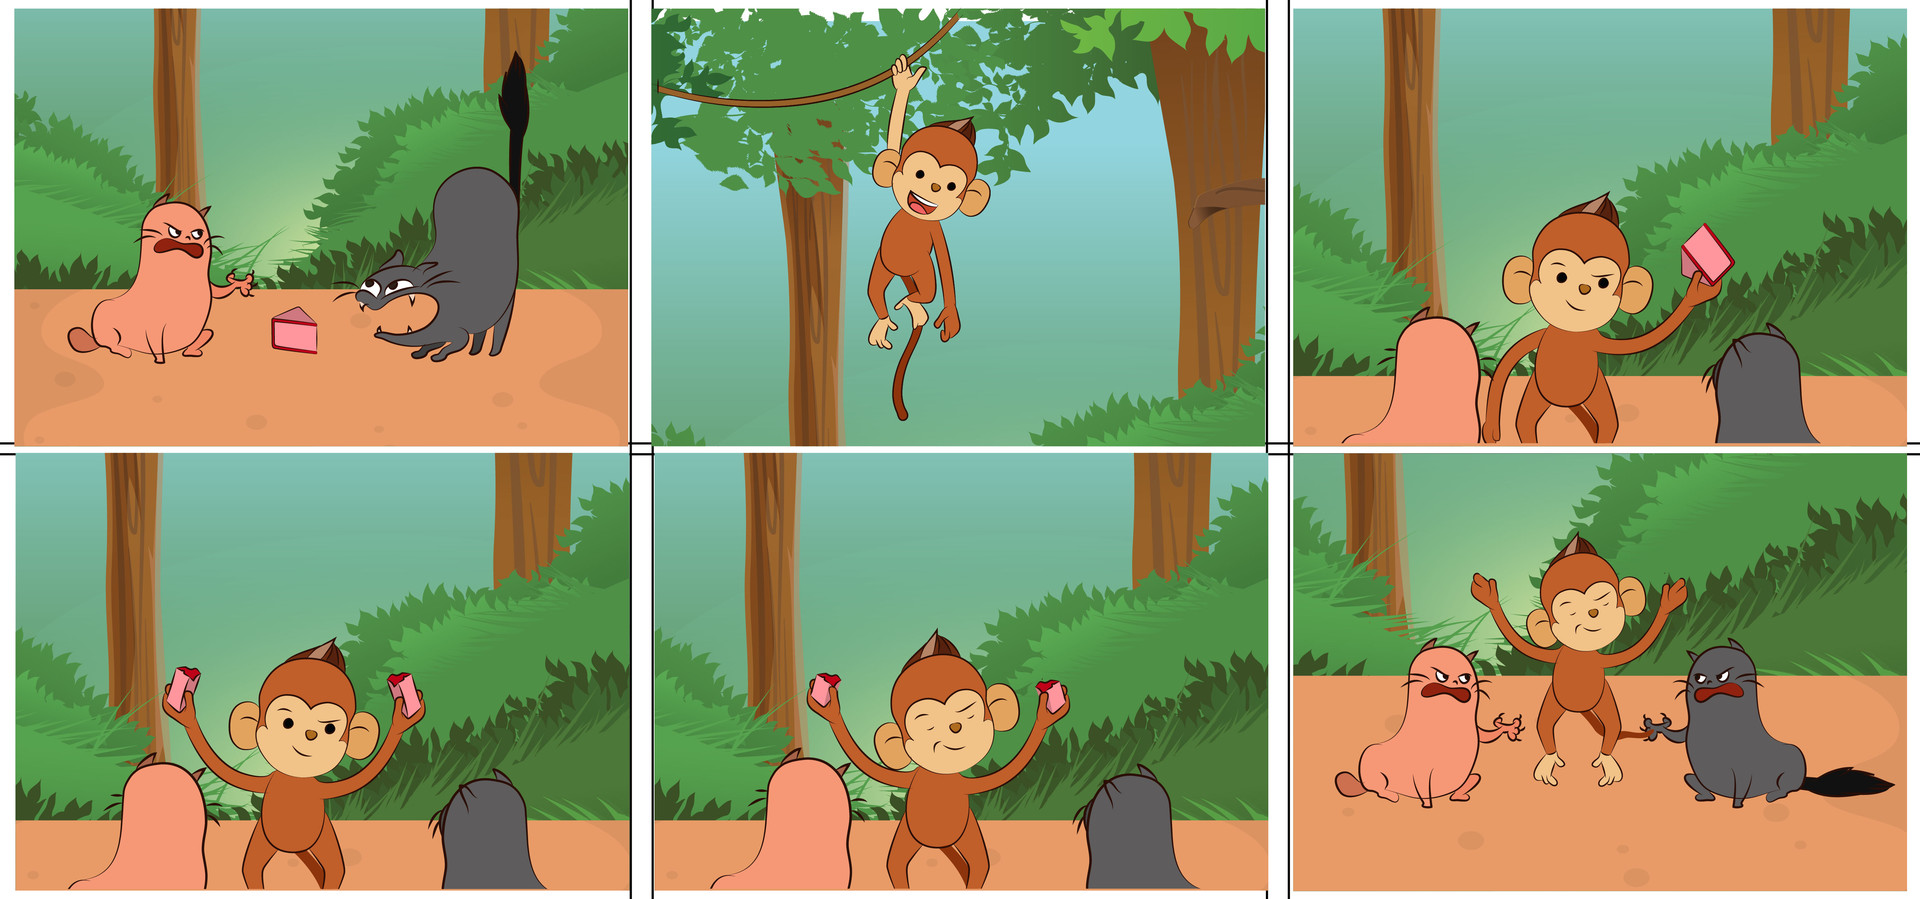 Rahul animator - Kids story illustration